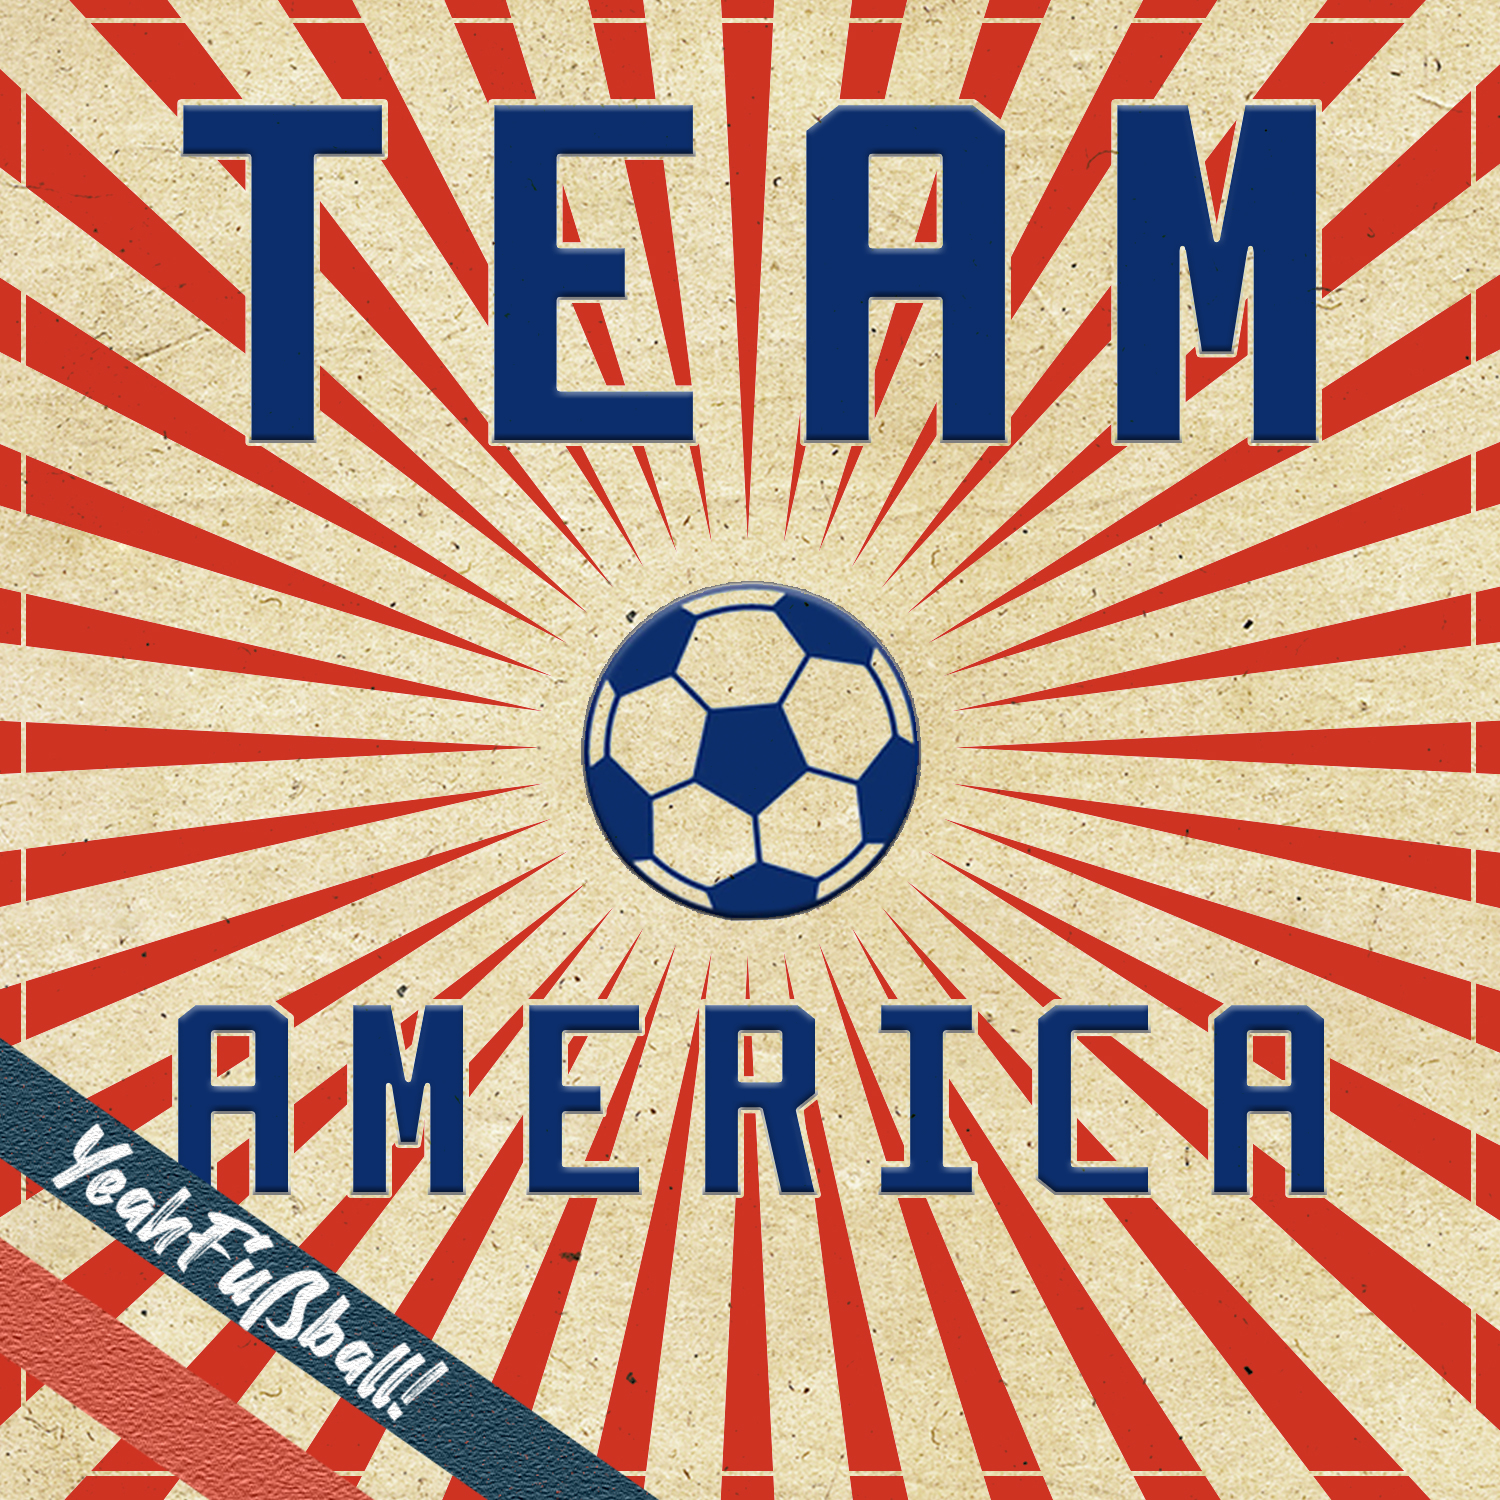 Das Team America: Als Nationalmannschaft in der Liga